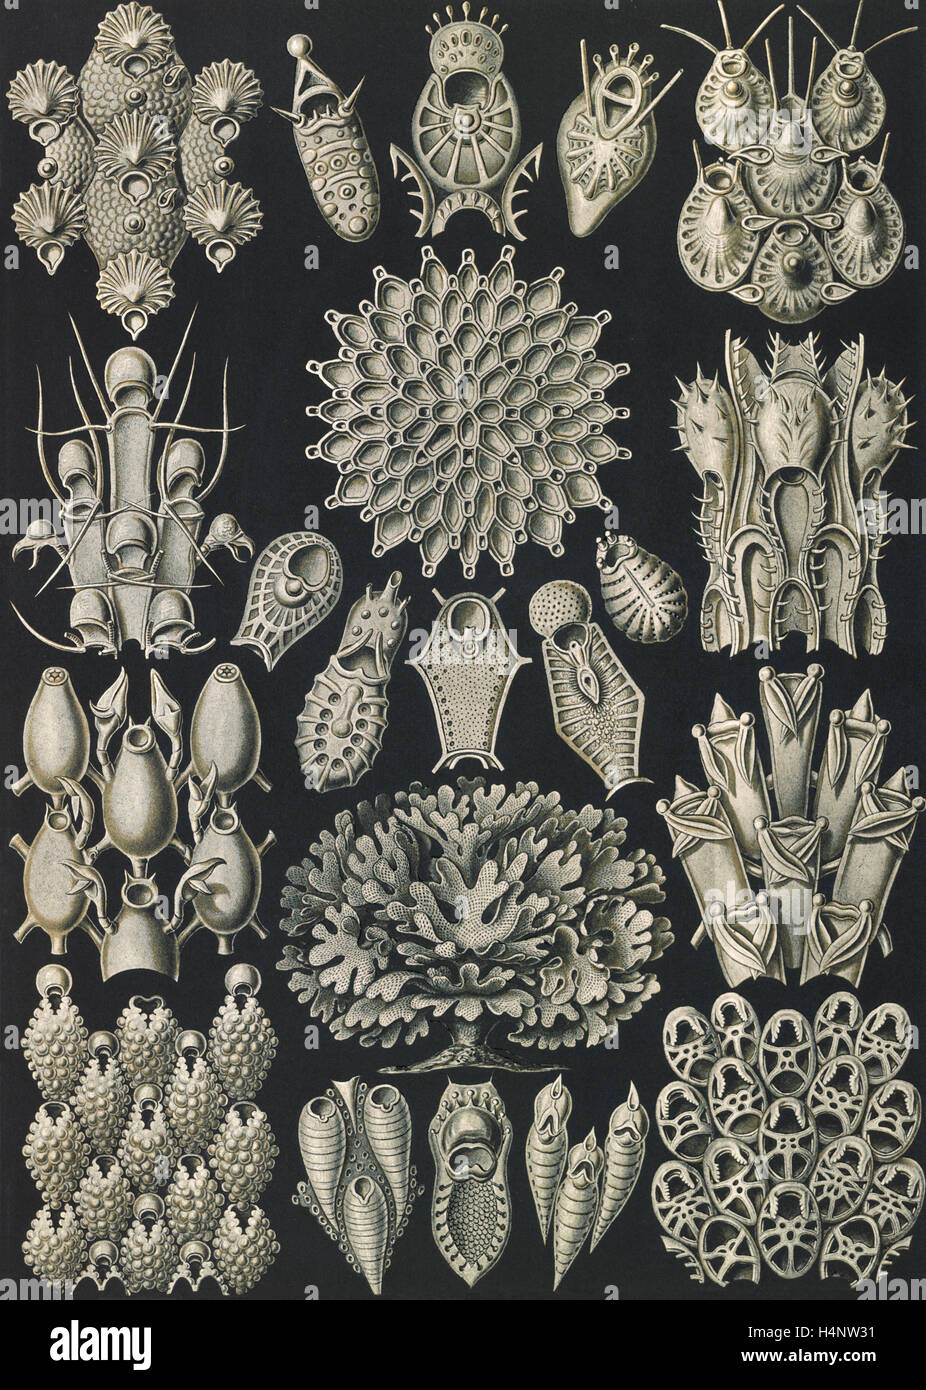 La figura mostra gli invertebrati acquatici. Briozoi. - Woostiere, 1 stampa : photomechanical ; foglio 36 x 26 cm., 1904. Foto Stock